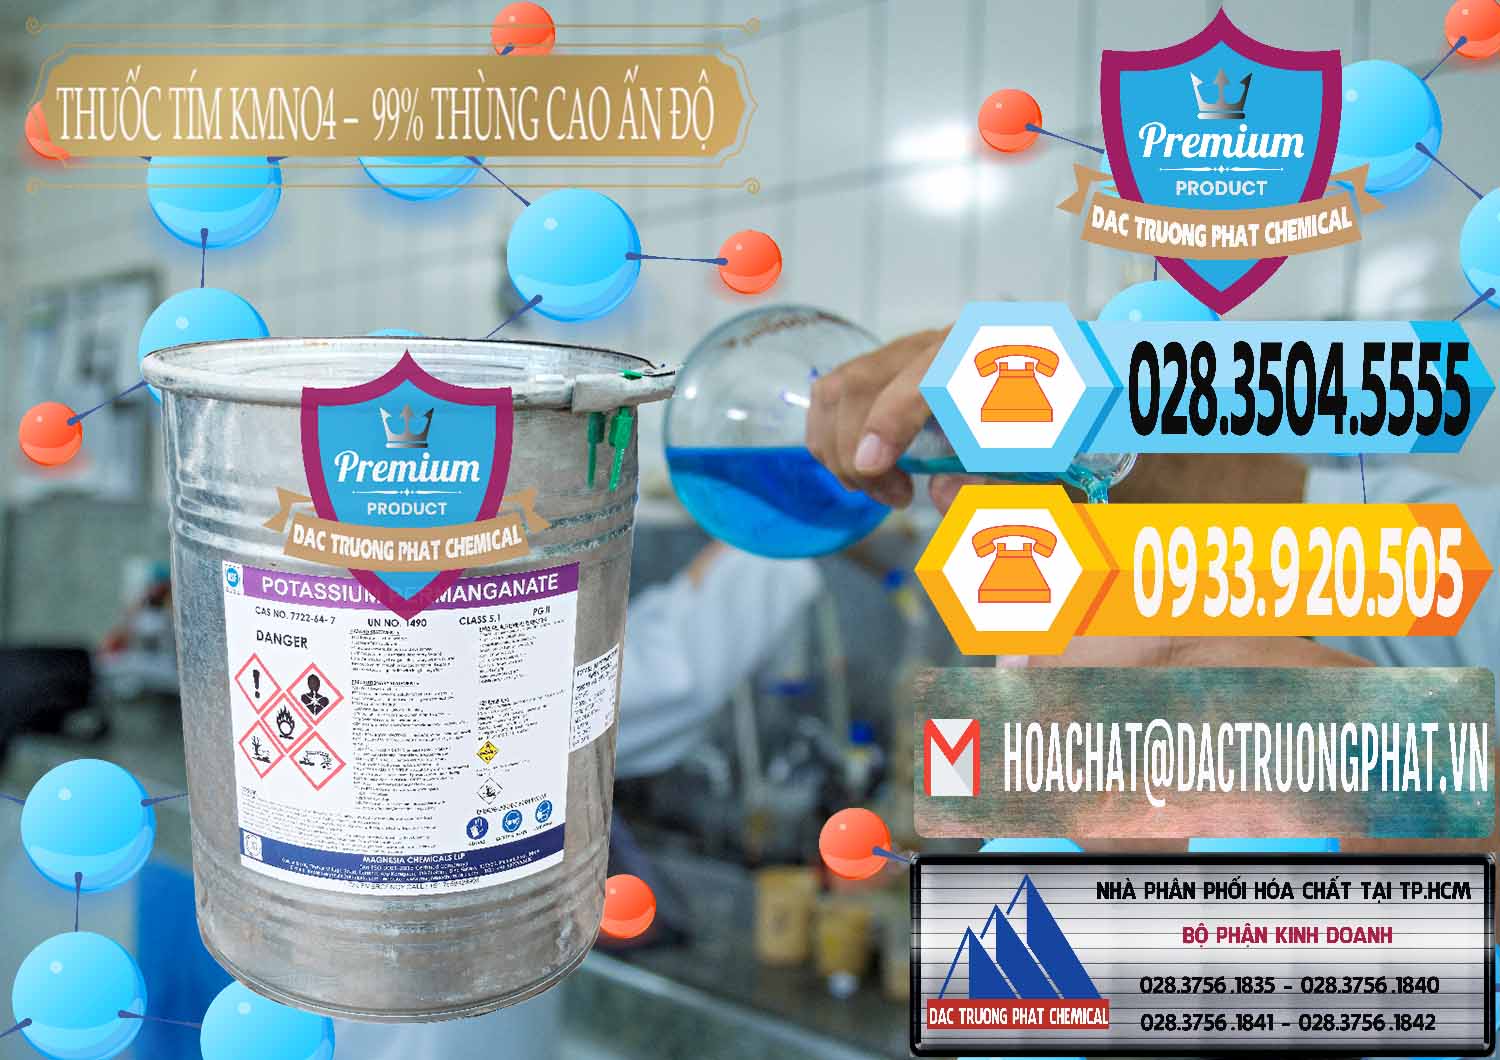 Công ty chuyên bán và cung cấp Thuốc Tím - KMNO4 Thùng Cao 99% Magnesia Chemicals Ấn Độ India - 0164 - Nhập khẩu ( phân phối ) hóa chất tại TP.HCM - hoachattayrua.net